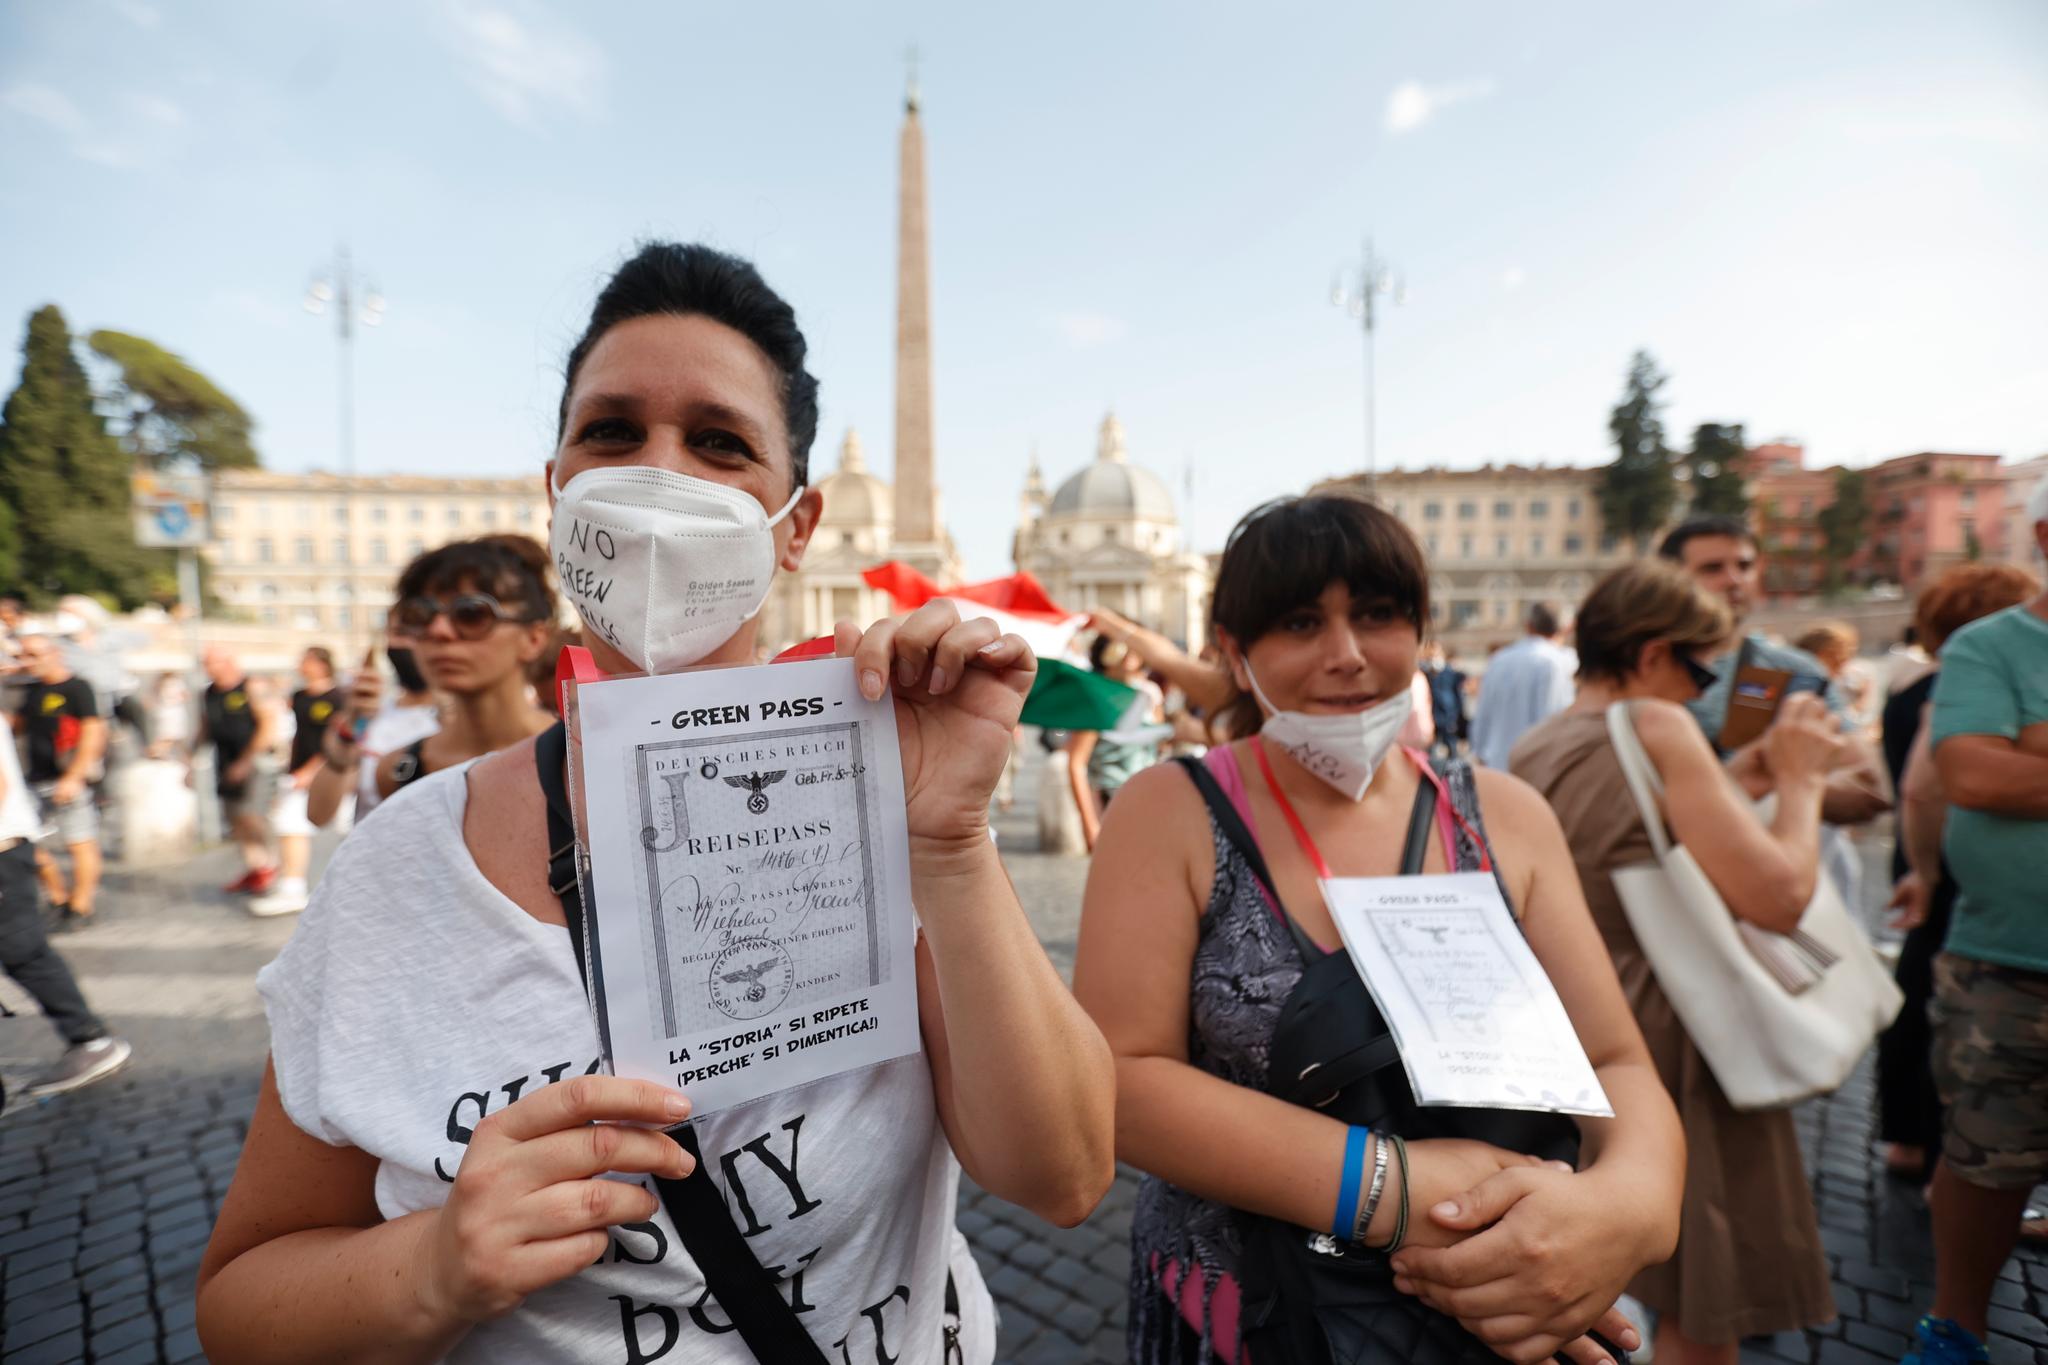 Det grønne vaksinepasset ligner på identifikasjonspapirene det tyske naziregimet ga til jødene, mener denne demonstranten som lørdag 24. juli protesterte i Roma.